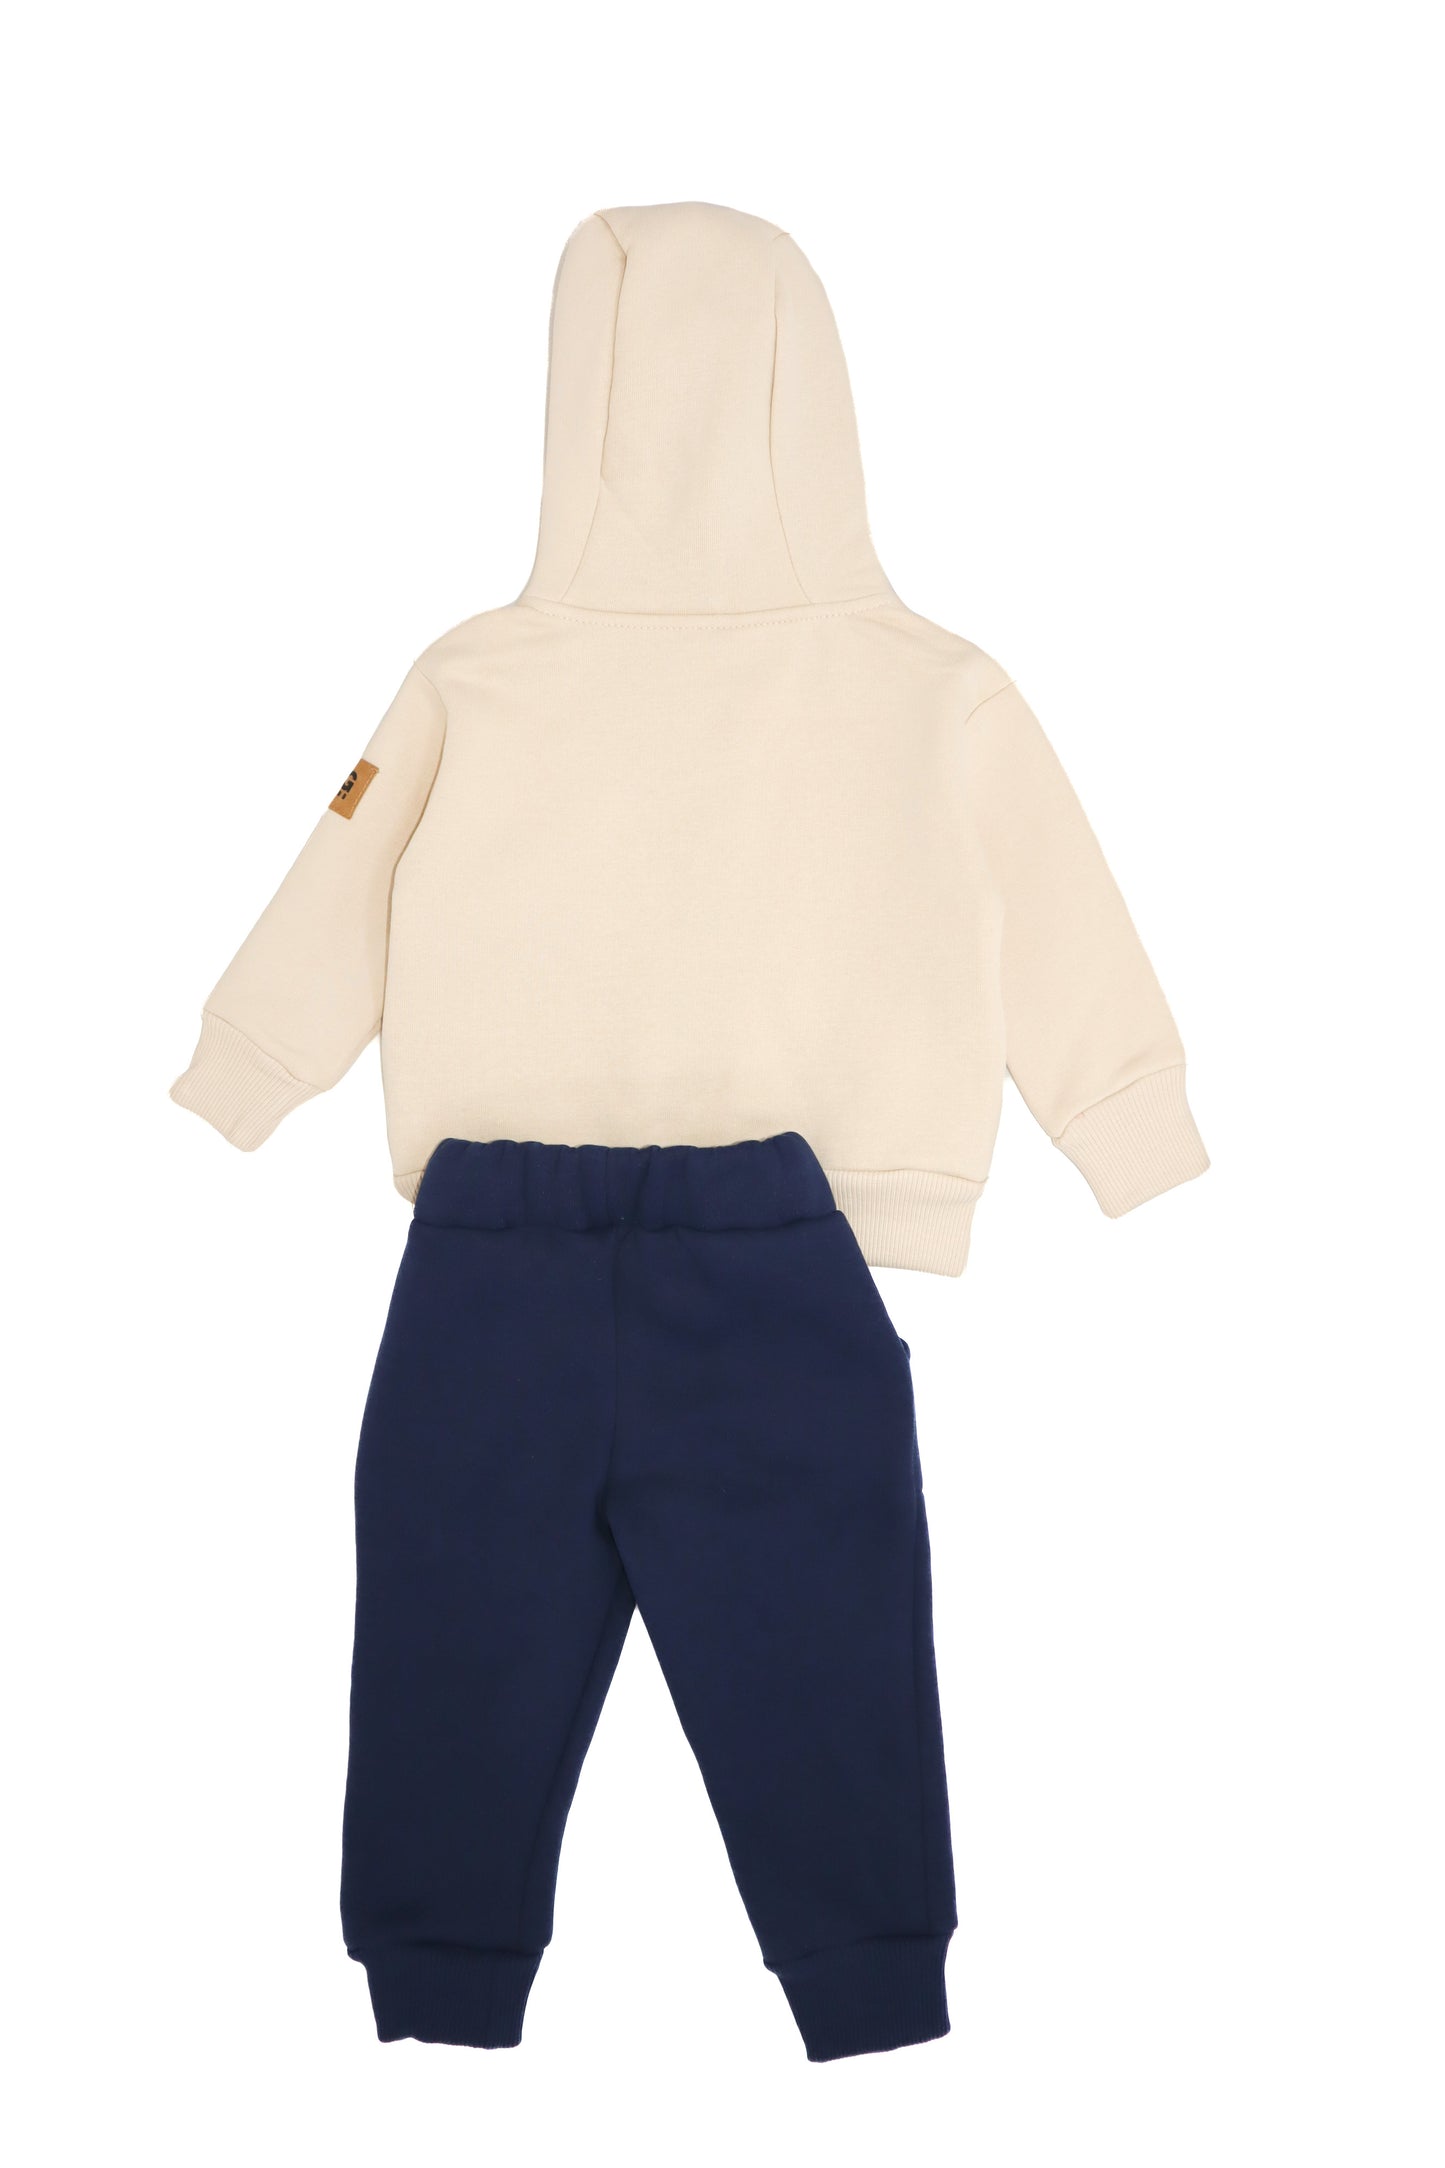 Детский кардиган-спортивный костюм из ткани Jaklon с застежкой-молнией спереди для ребенка